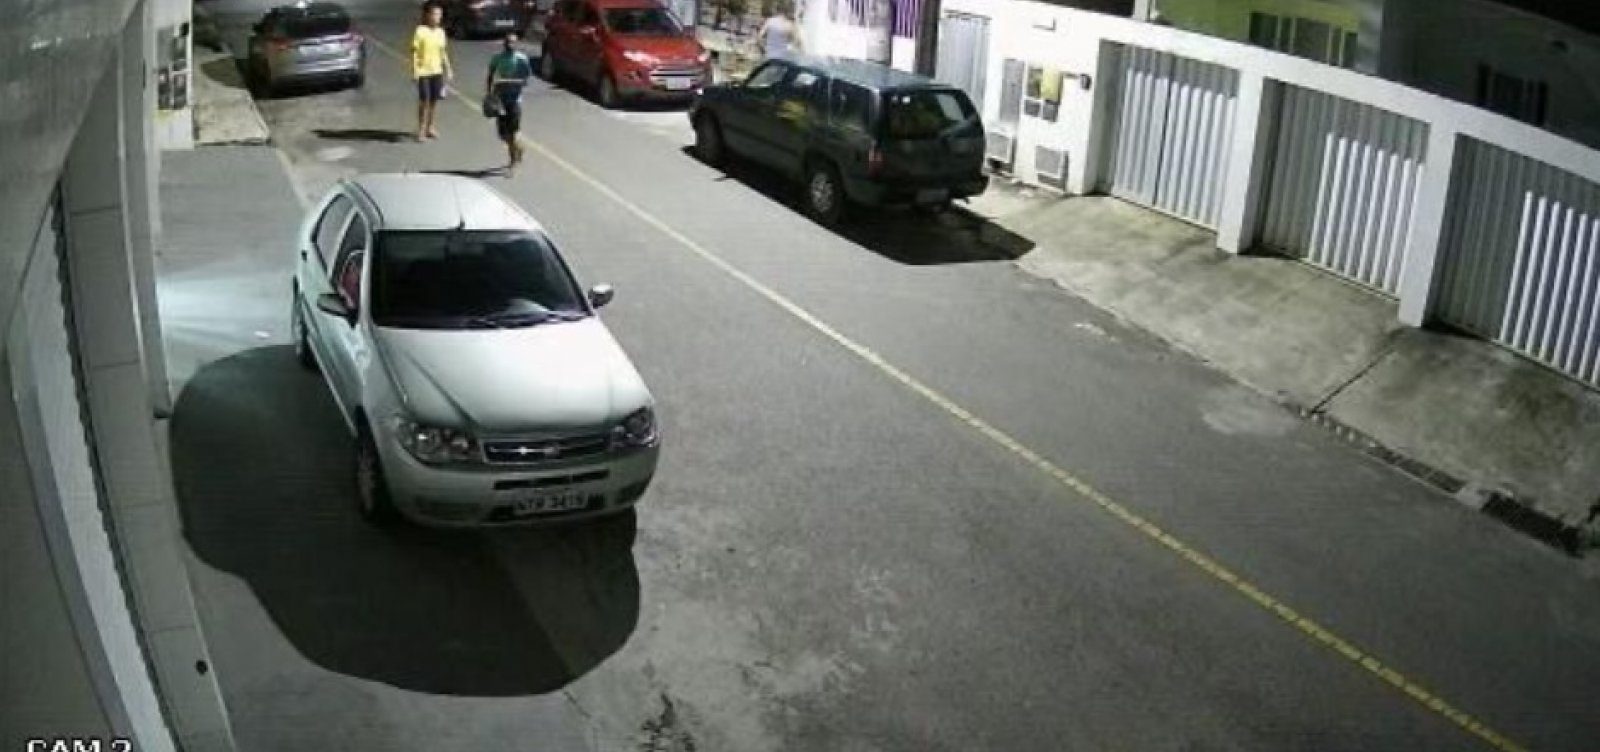 Vídeo: dupla armada assalta homem em rua vizinha à companhia da PM, em Pernambués